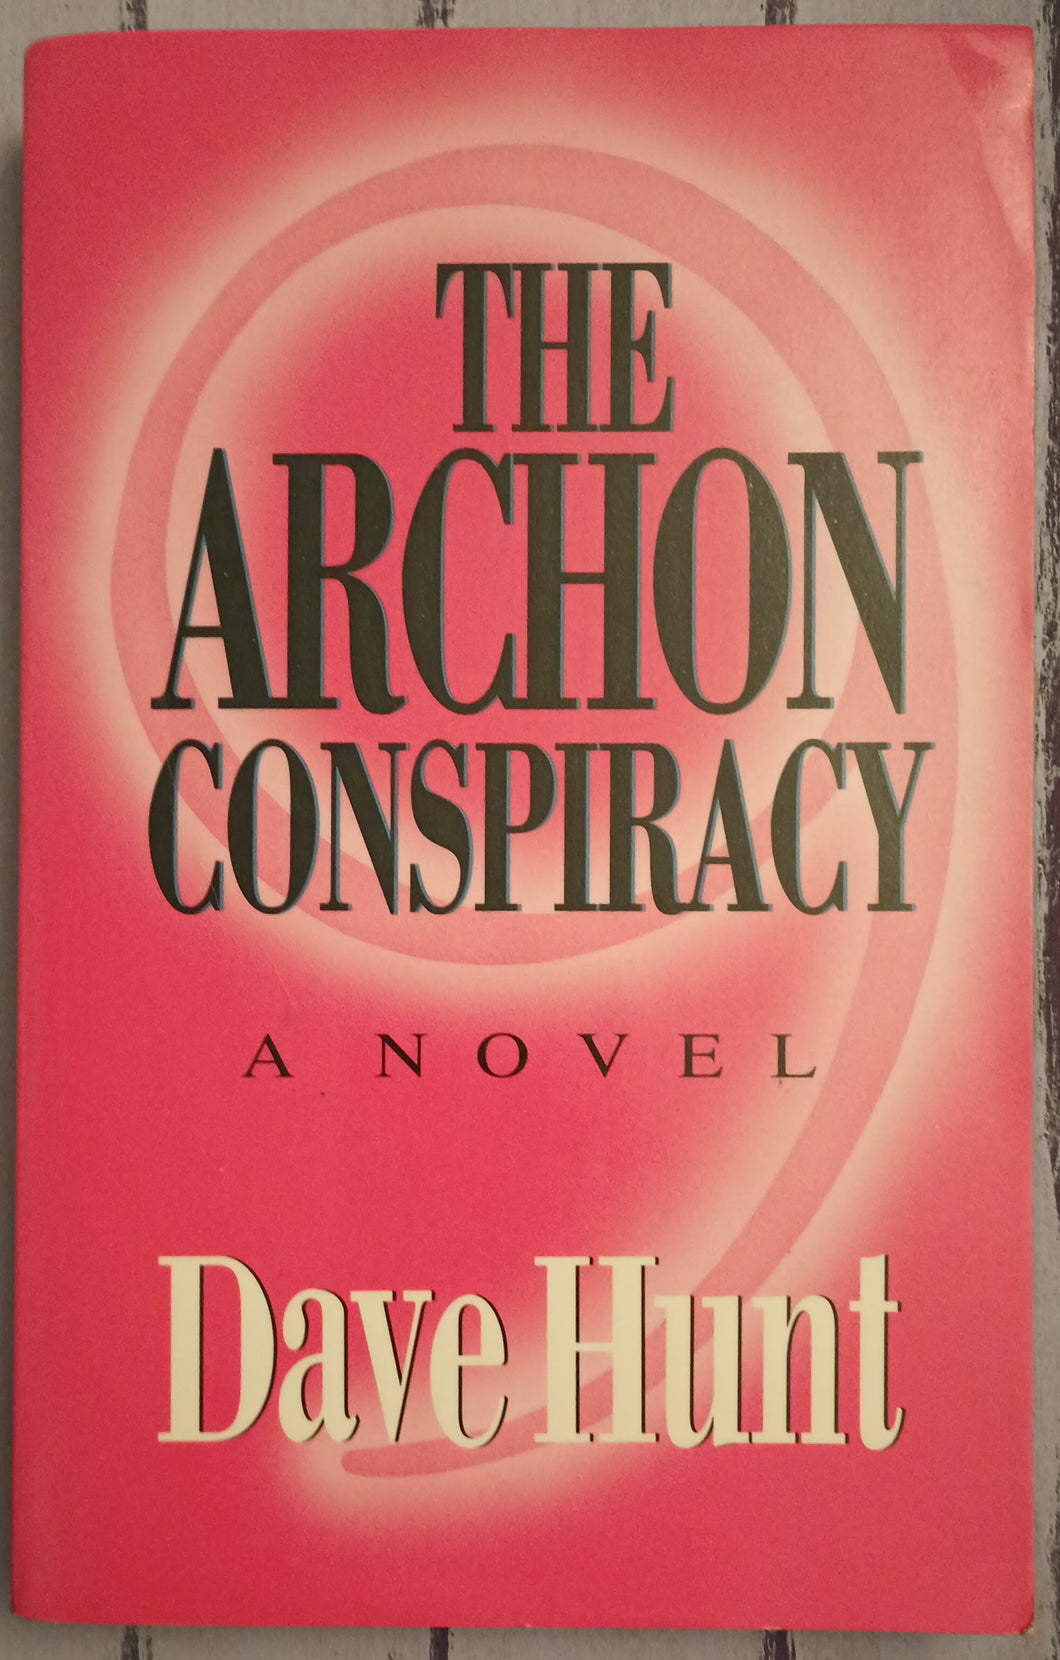 The Archon Conspiracy - A Novel